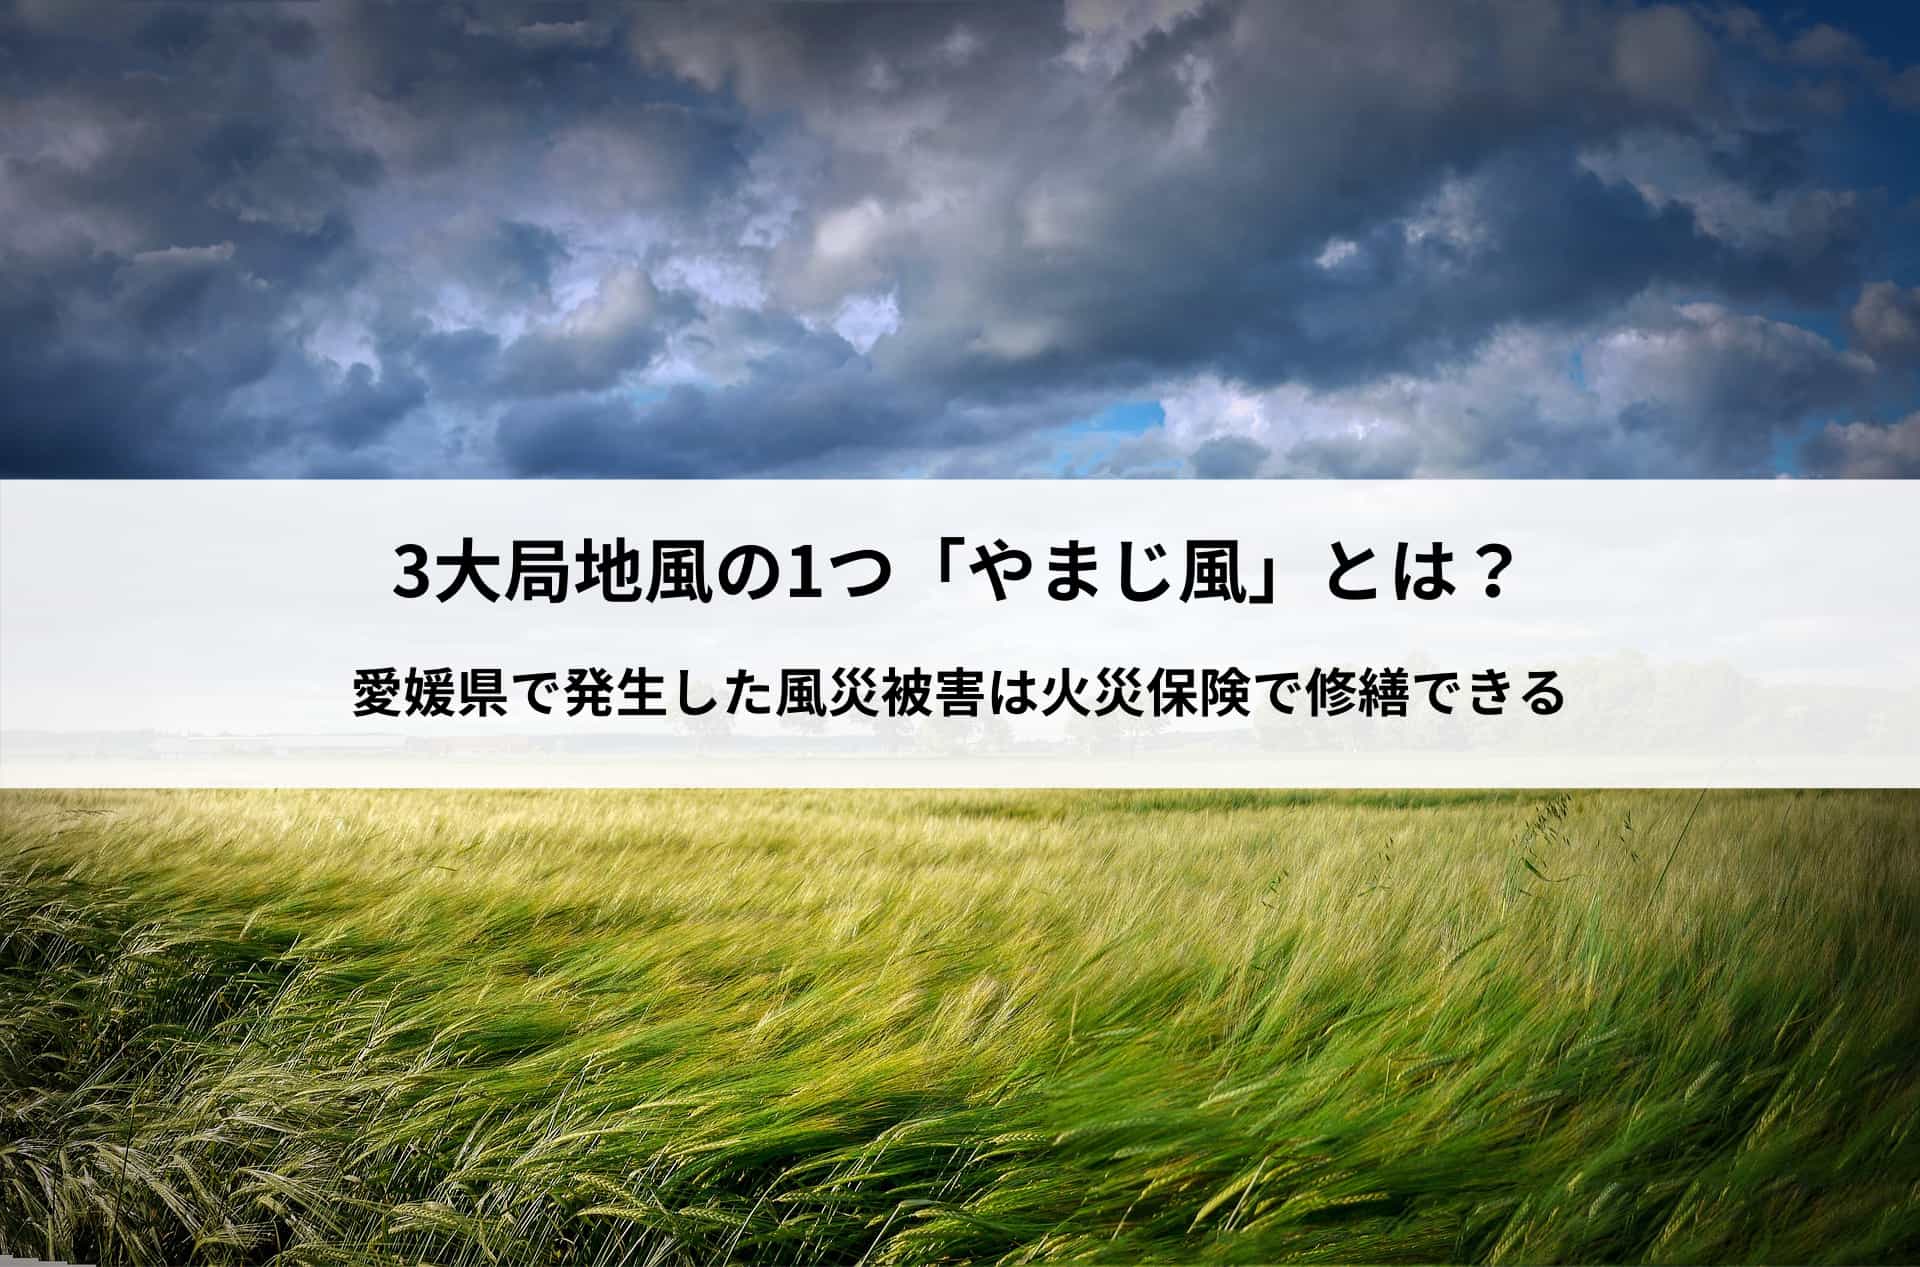 3大局地風の1つ「やまじ風」とは？愛媛県で発生した風災被害は火災保険で修繕できる。